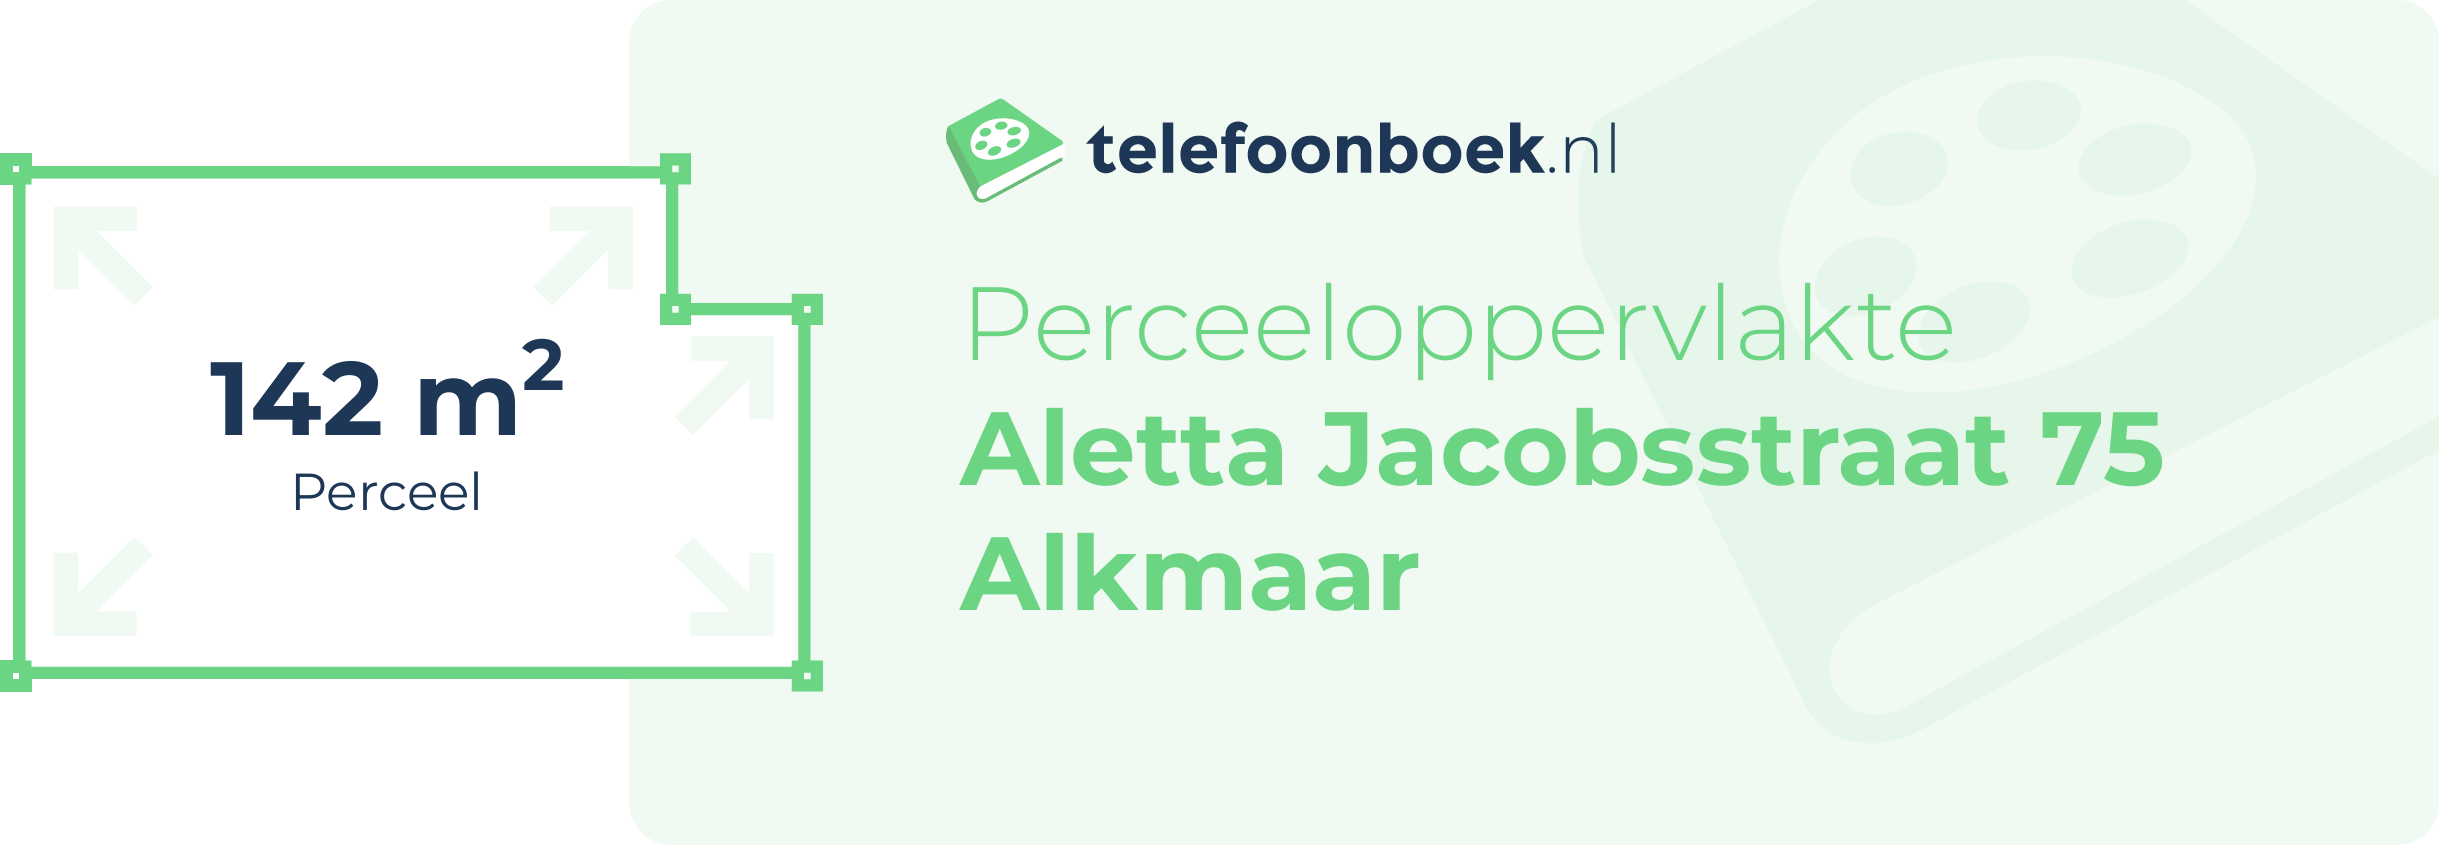 Perceeloppervlakte Aletta Jacobsstraat 75 Alkmaar